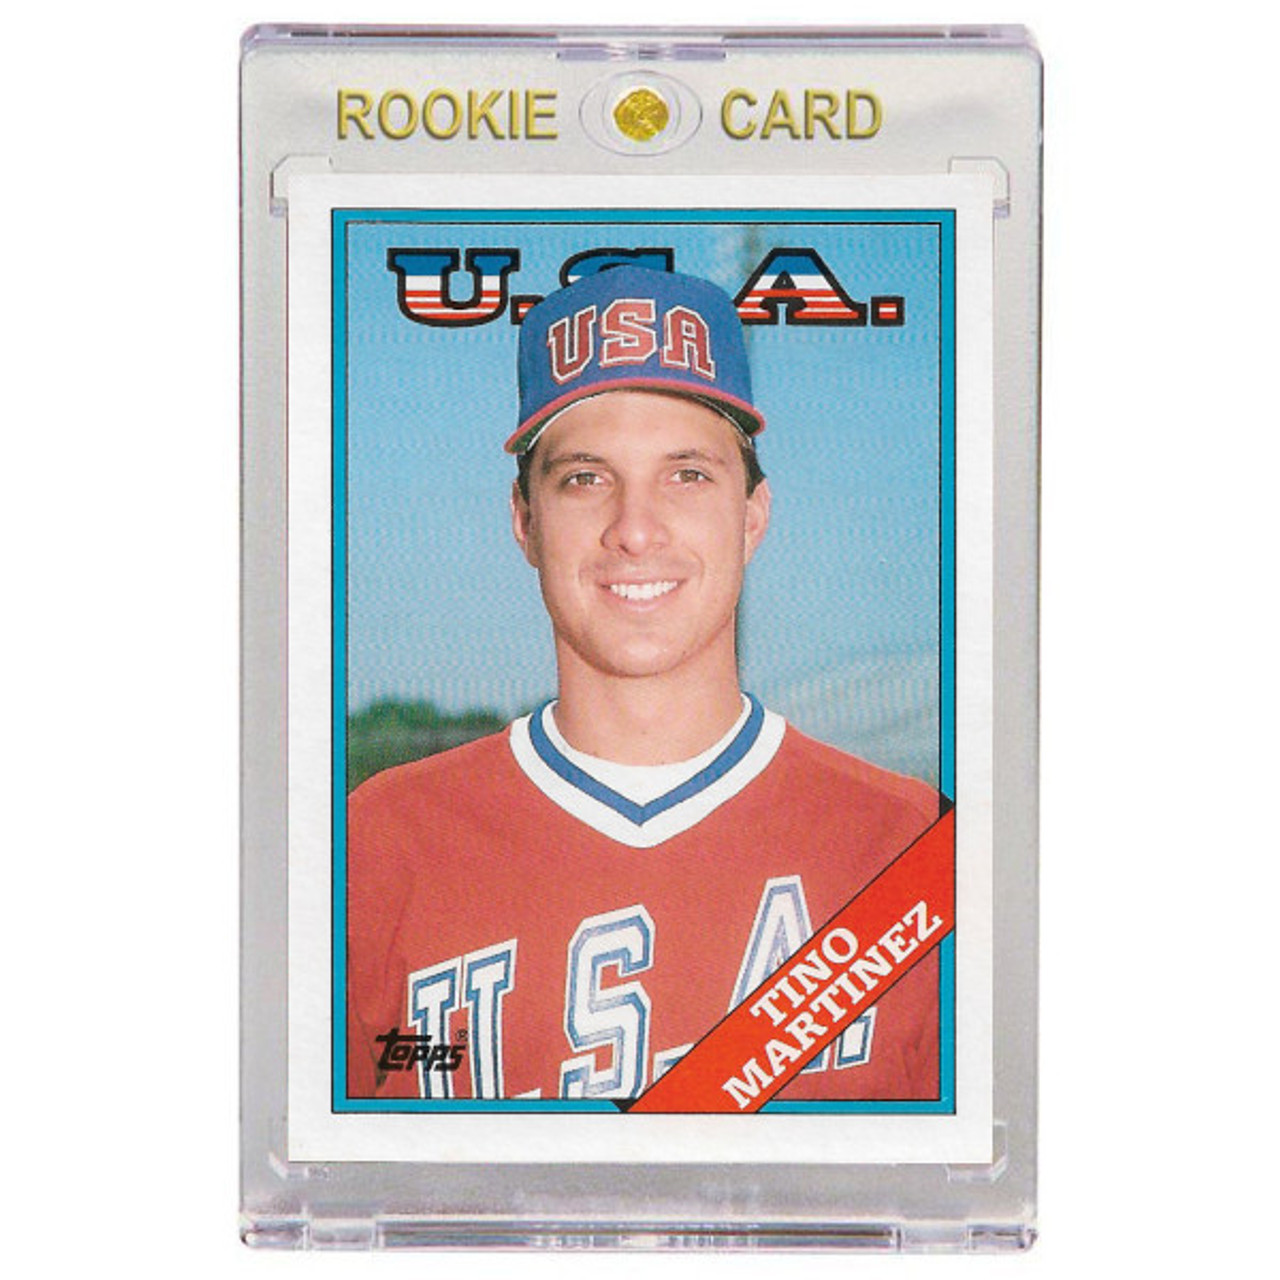 1988 Topps Ryne Sandberg Chicago Cubs Baseball Card - MLB Collectible